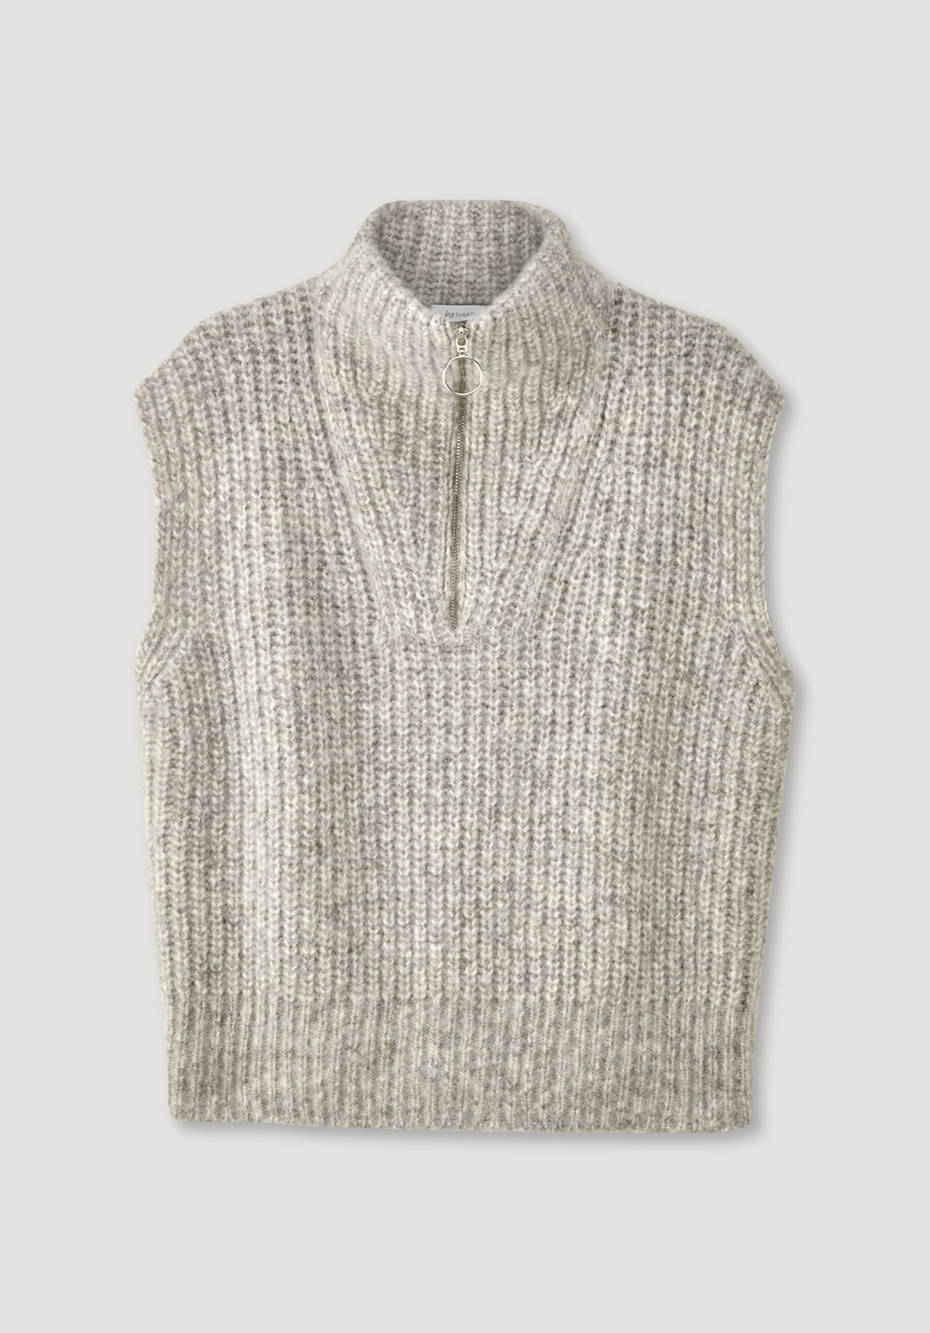 Pullover aus Alpaka mit Bio-Pima-Baumwolle